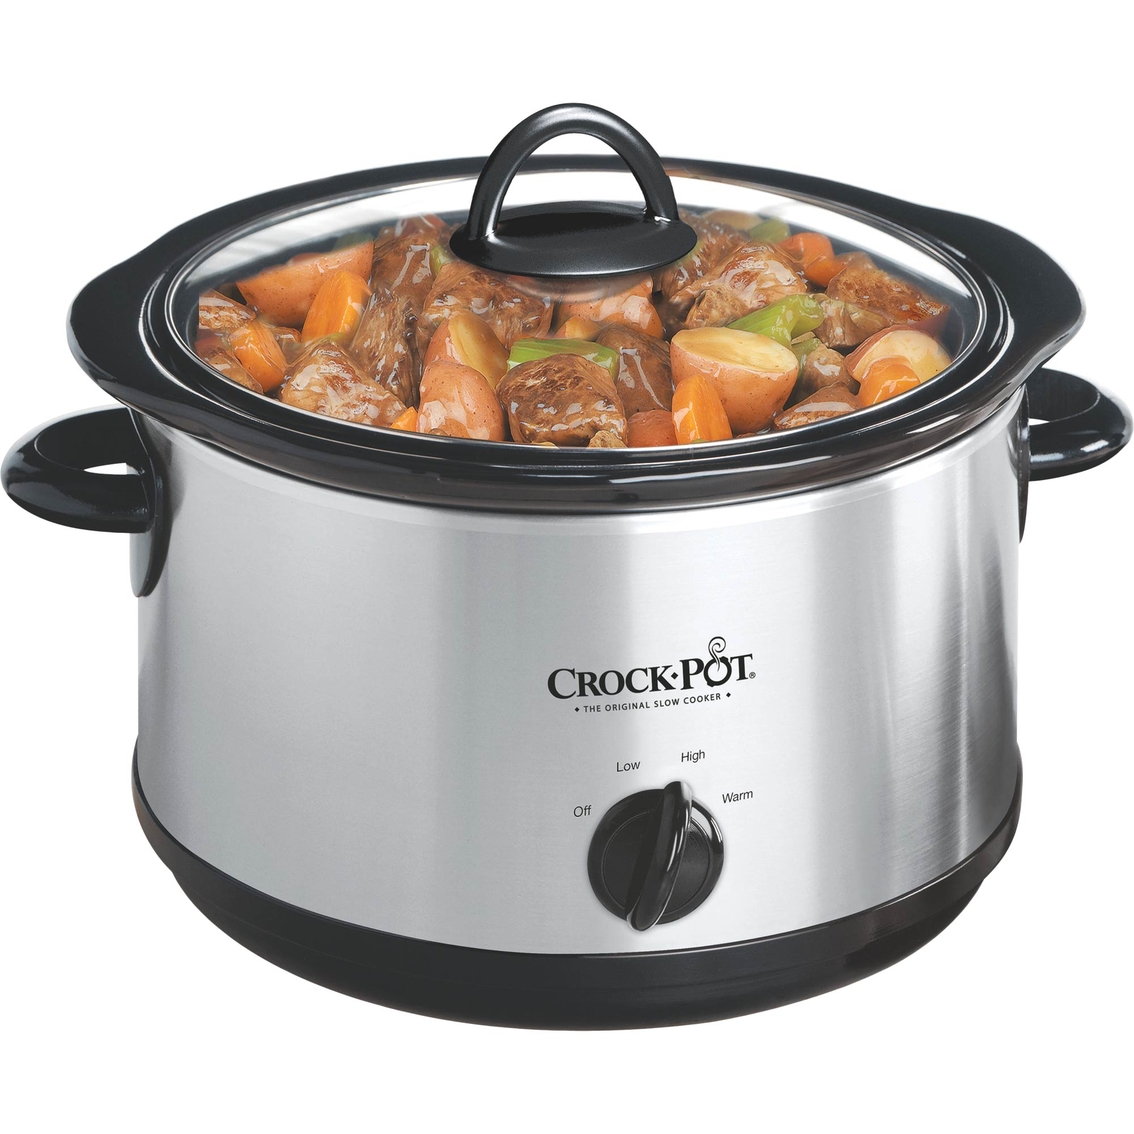 Crock-Pot 4.5 Qt. Manual Slow Cooker - Image 2 of 2